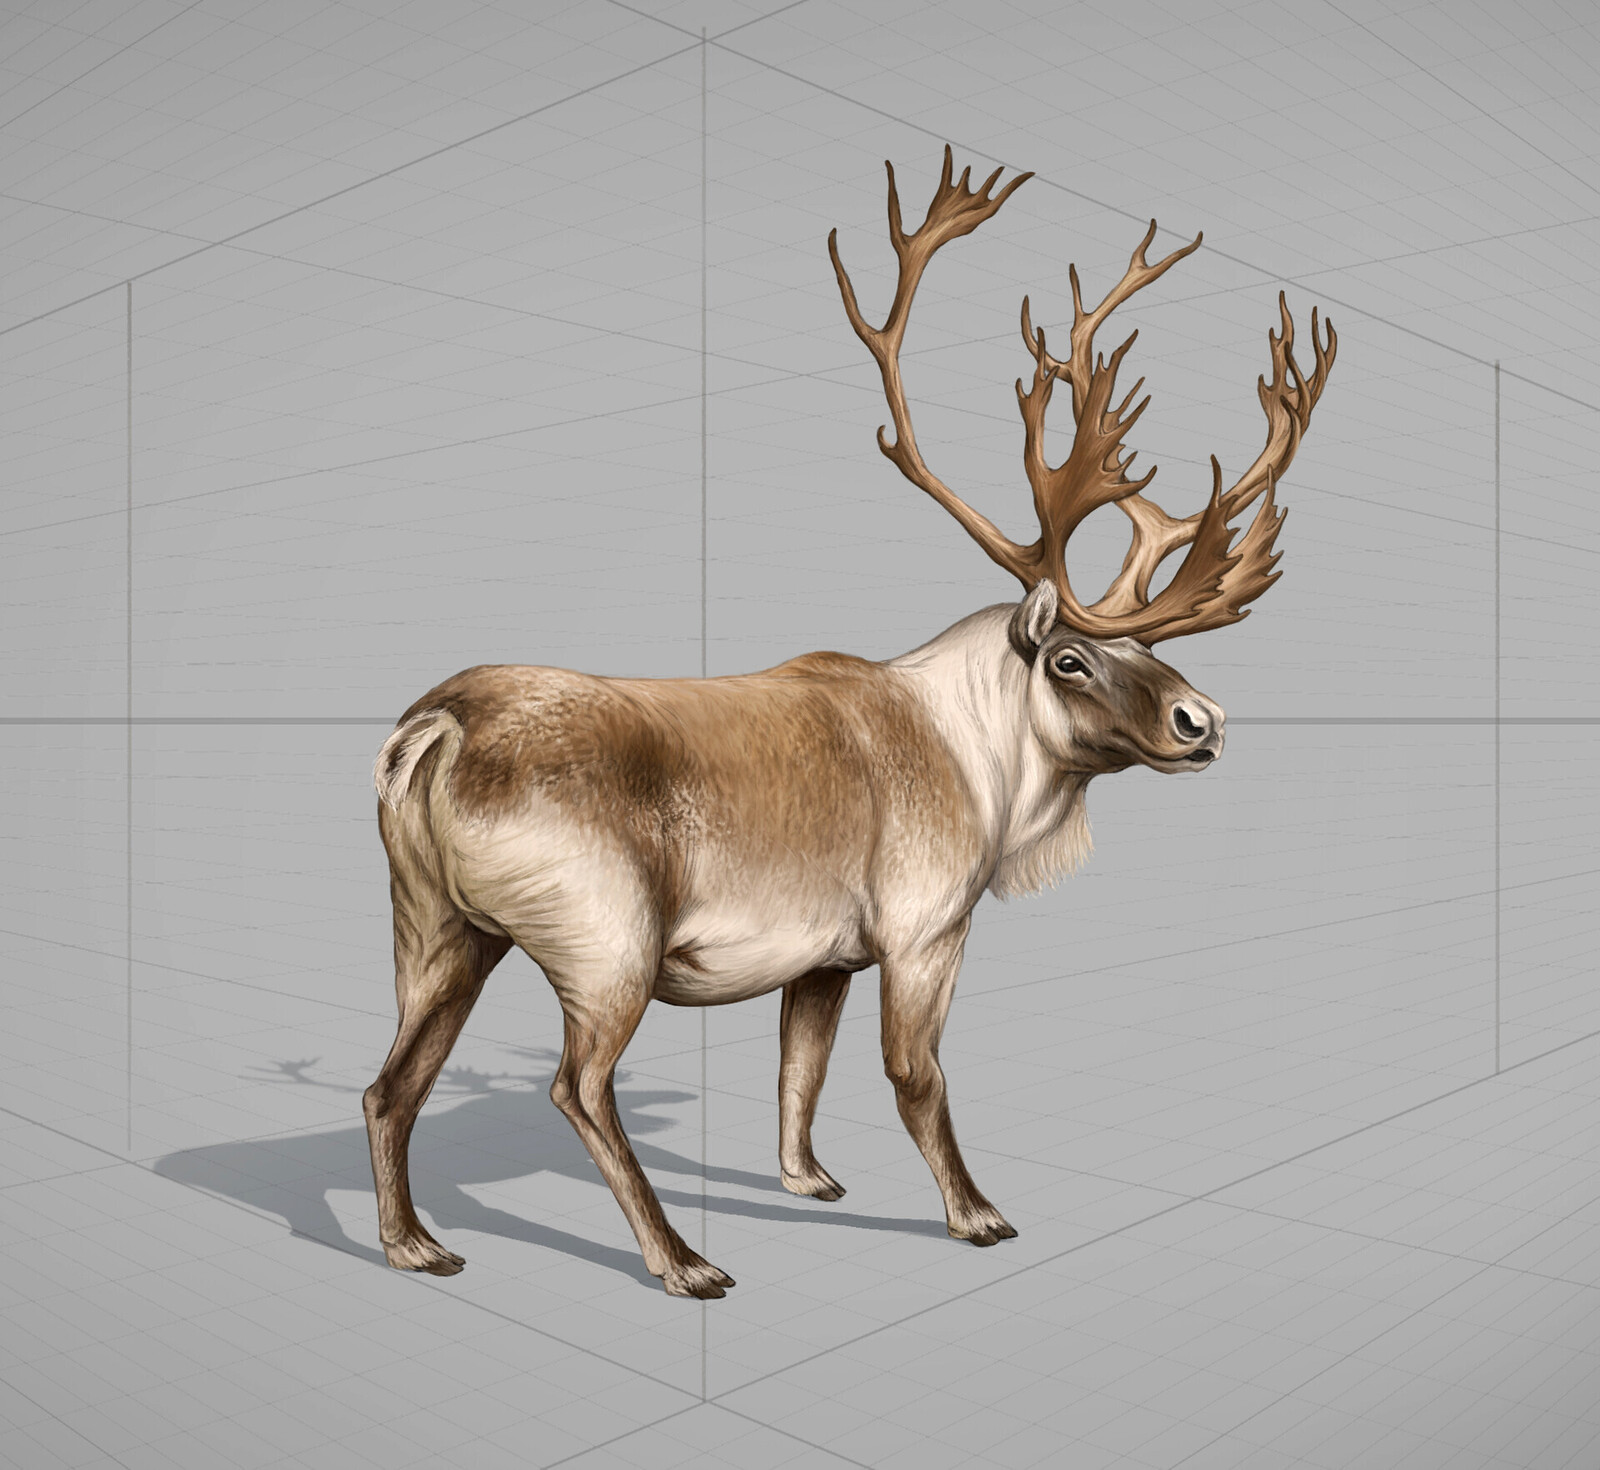 Prehistoric Animal Concepts – Reindeer